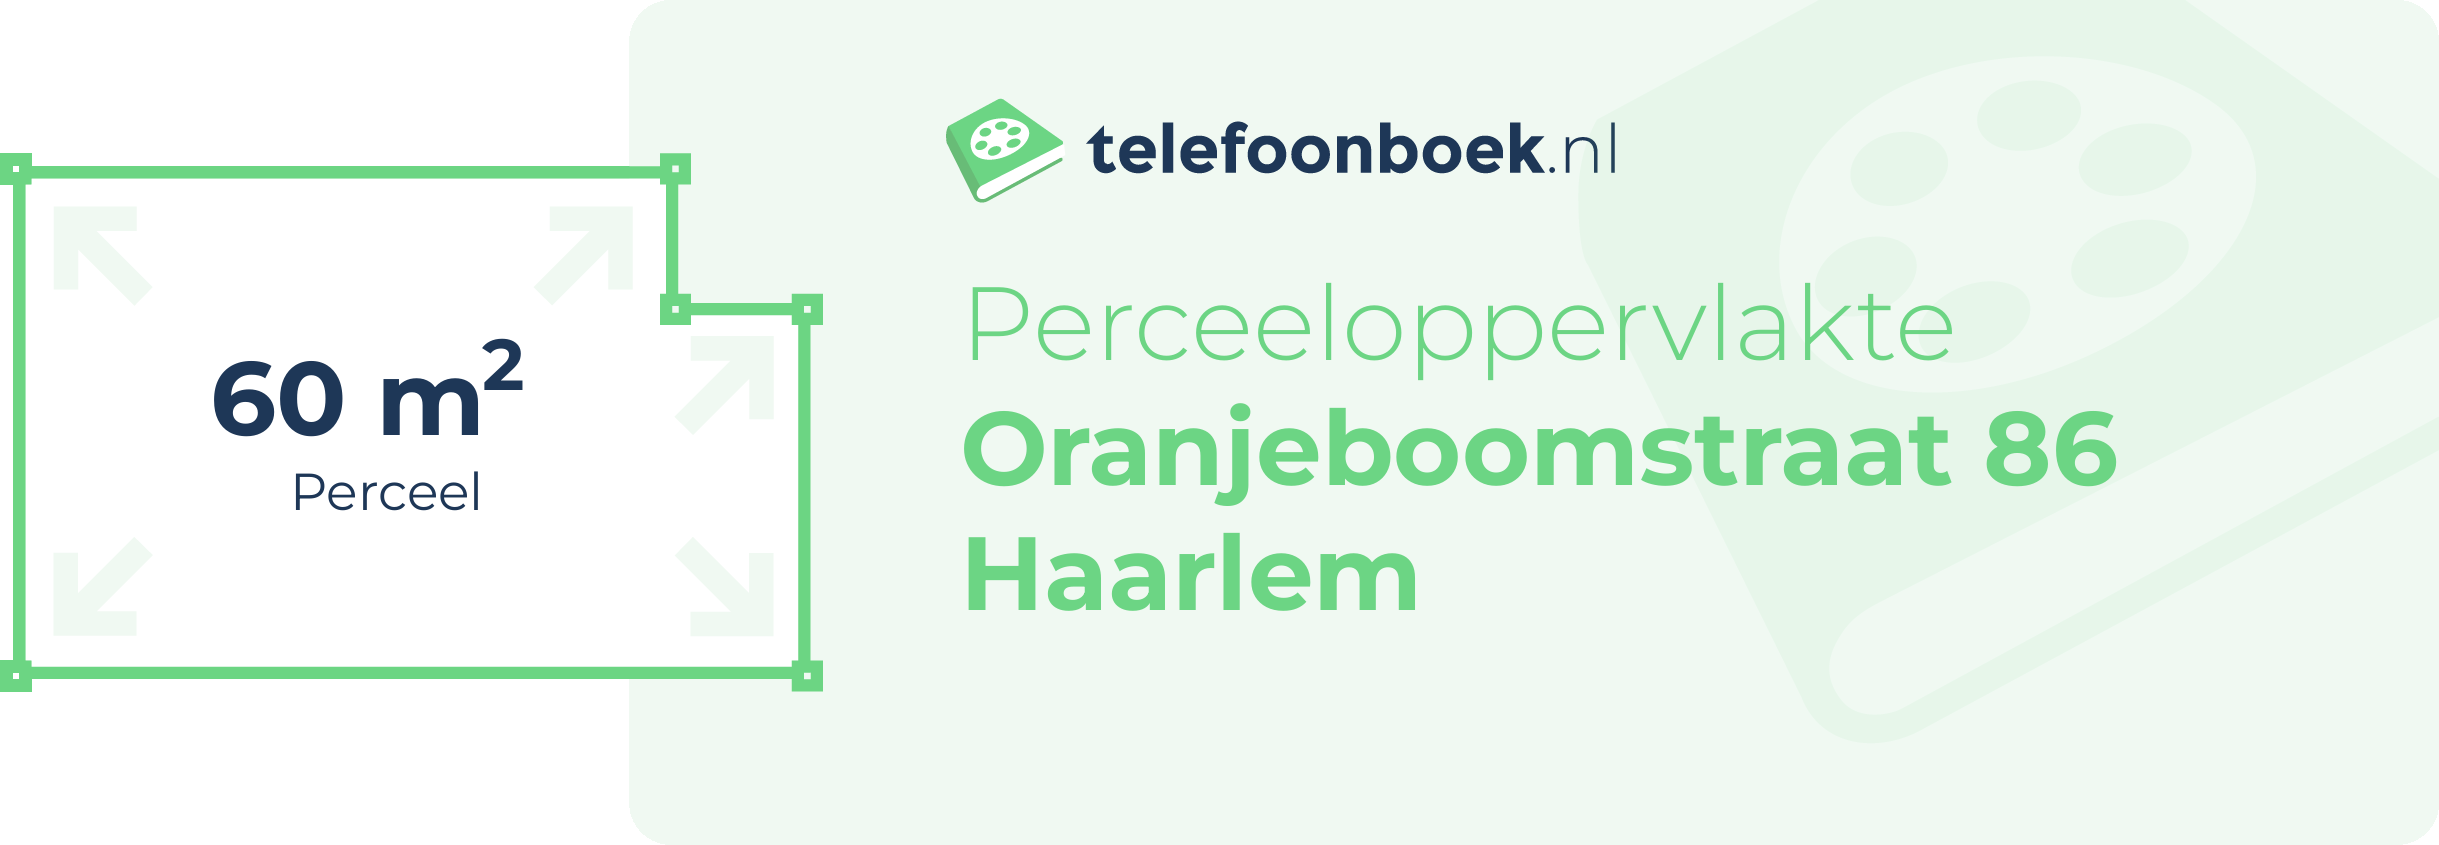 Perceeloppervlakte Oranjeboomstraat 86 Haarlem